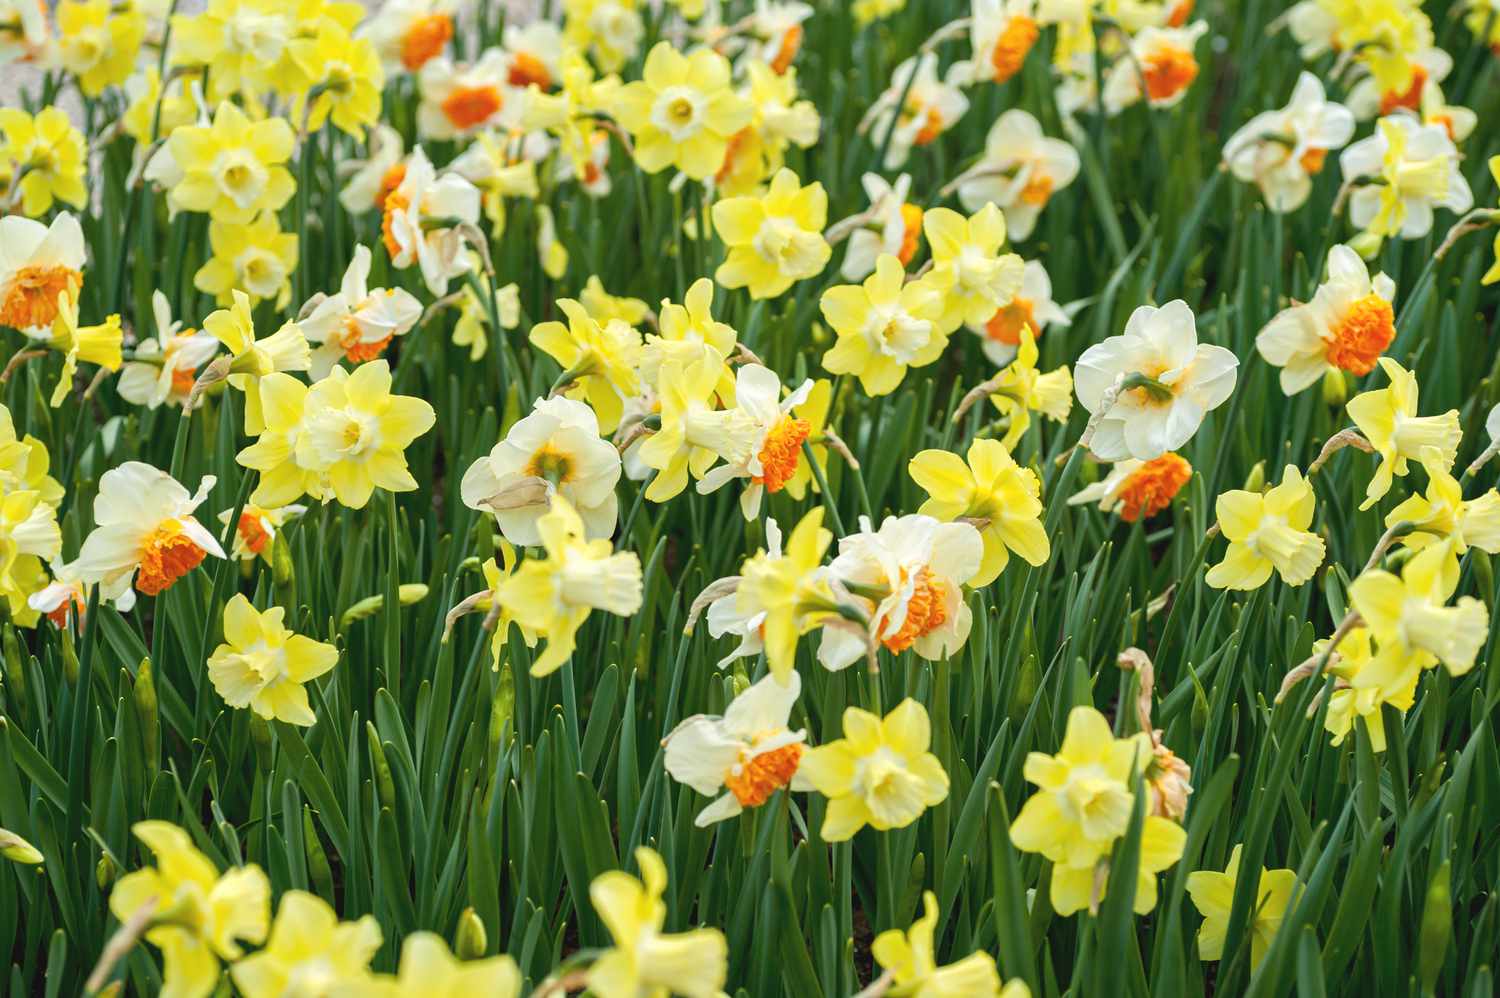 Jonquil-Blüten mit gelben und weißen narzissenähnlichen Blüten an hohen Schilfrohrstängeln